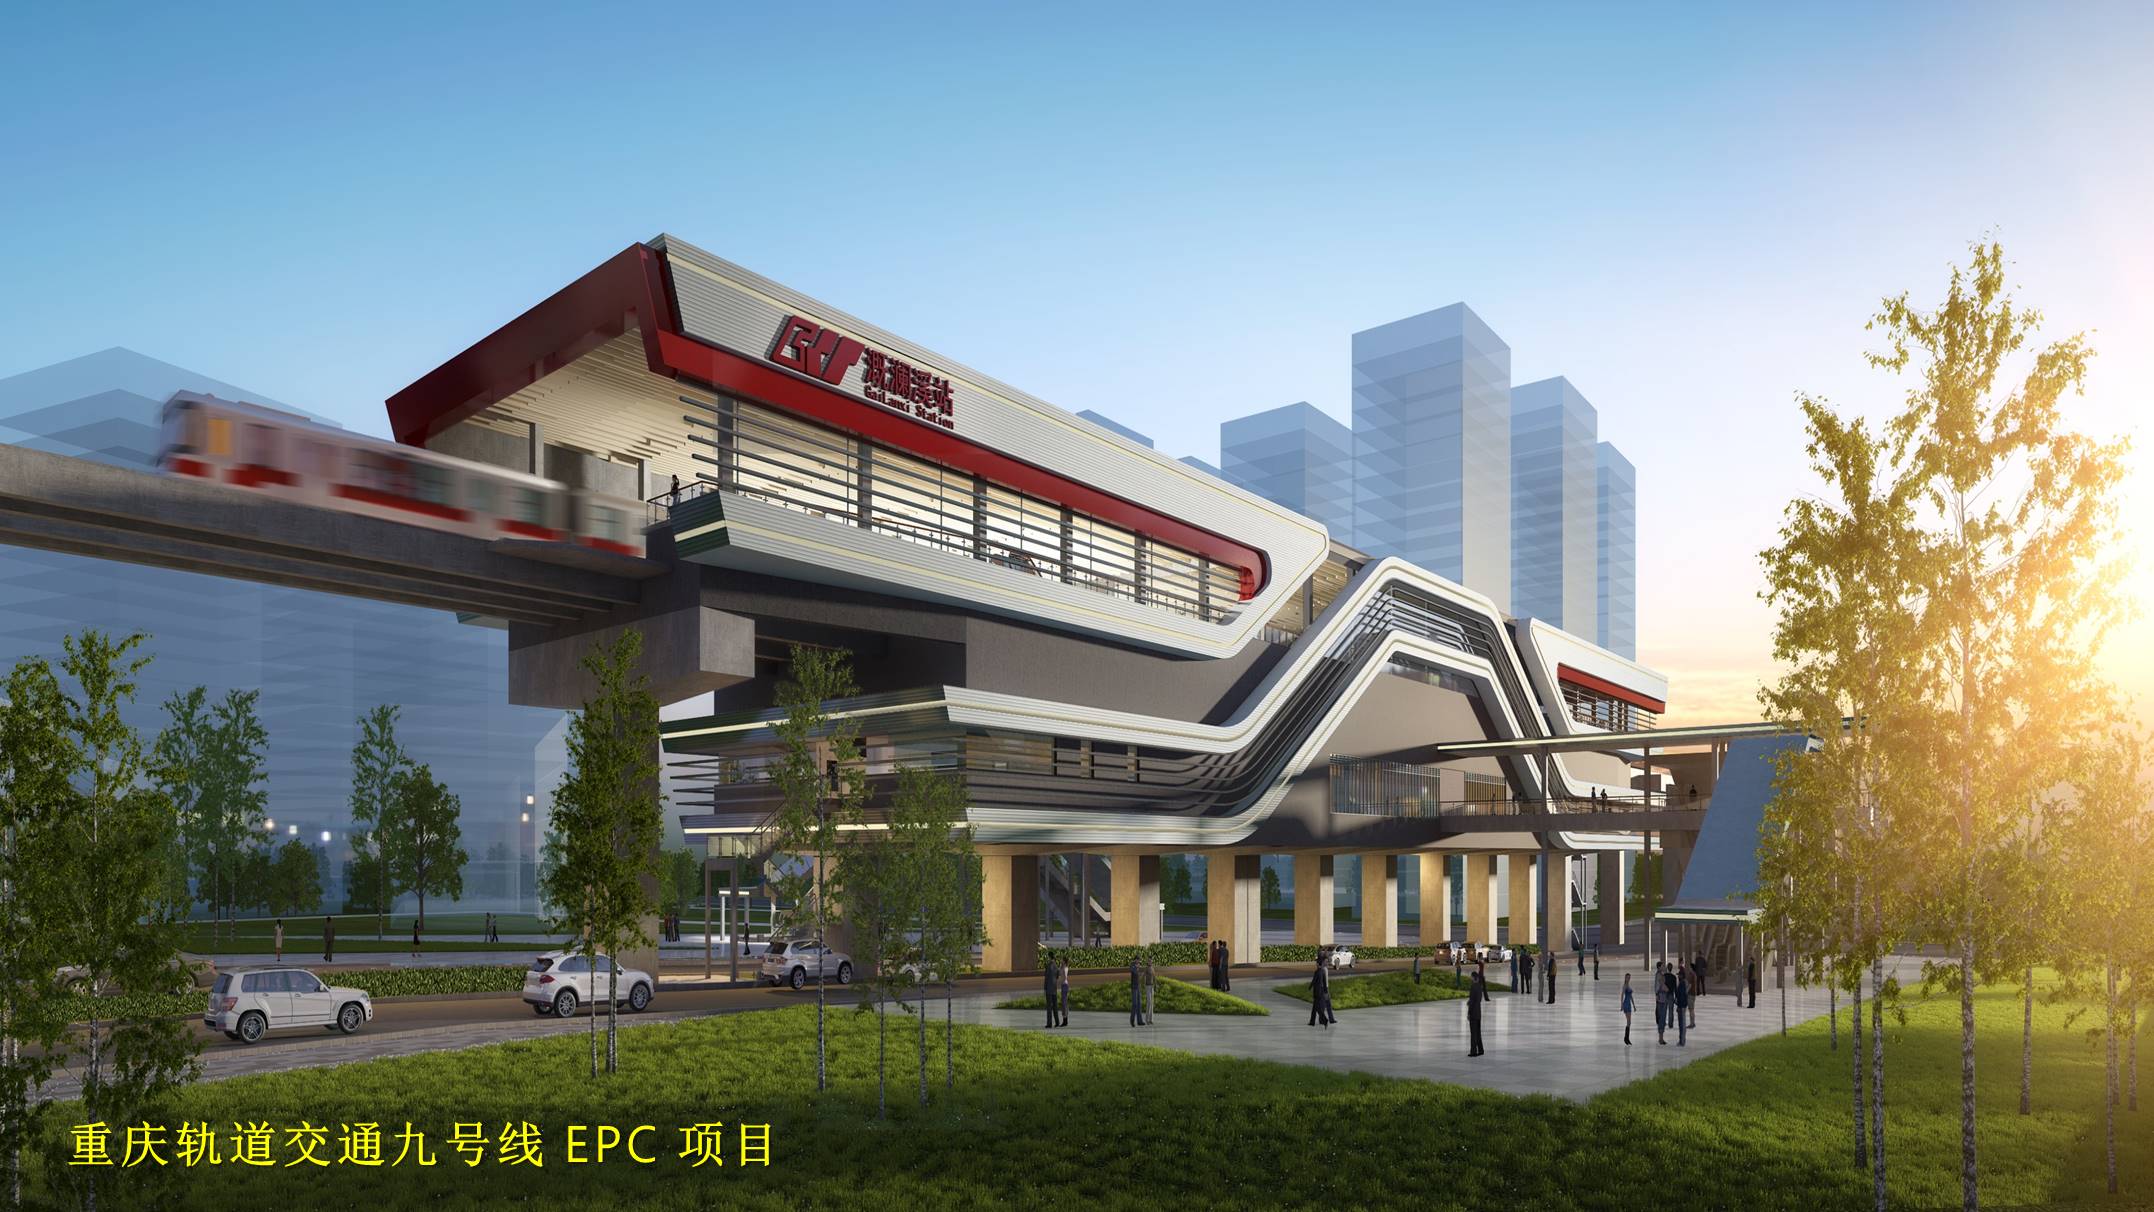 6、重庆轨道交通九号线 EPC项目.jpg